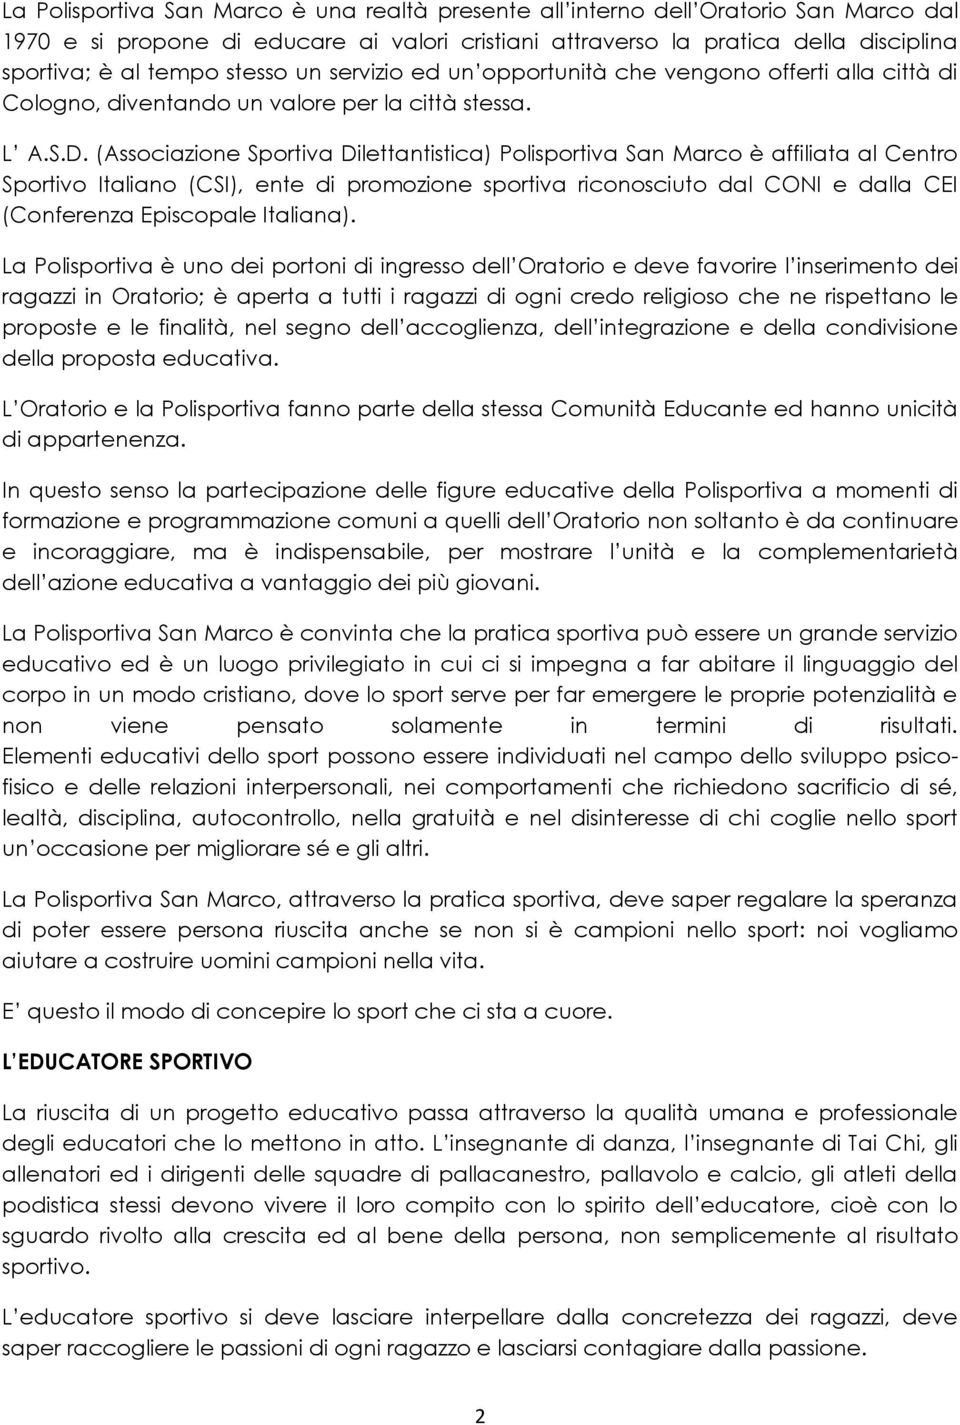 (Associazione Sportiva Dilettantistica) Polisportiva San Marco è affiliata al Centro Sportivo Italiano (CSI), ente di promozione sportiva riconosciuto dal CONI e dalla CEI (Conferenza Episcopale